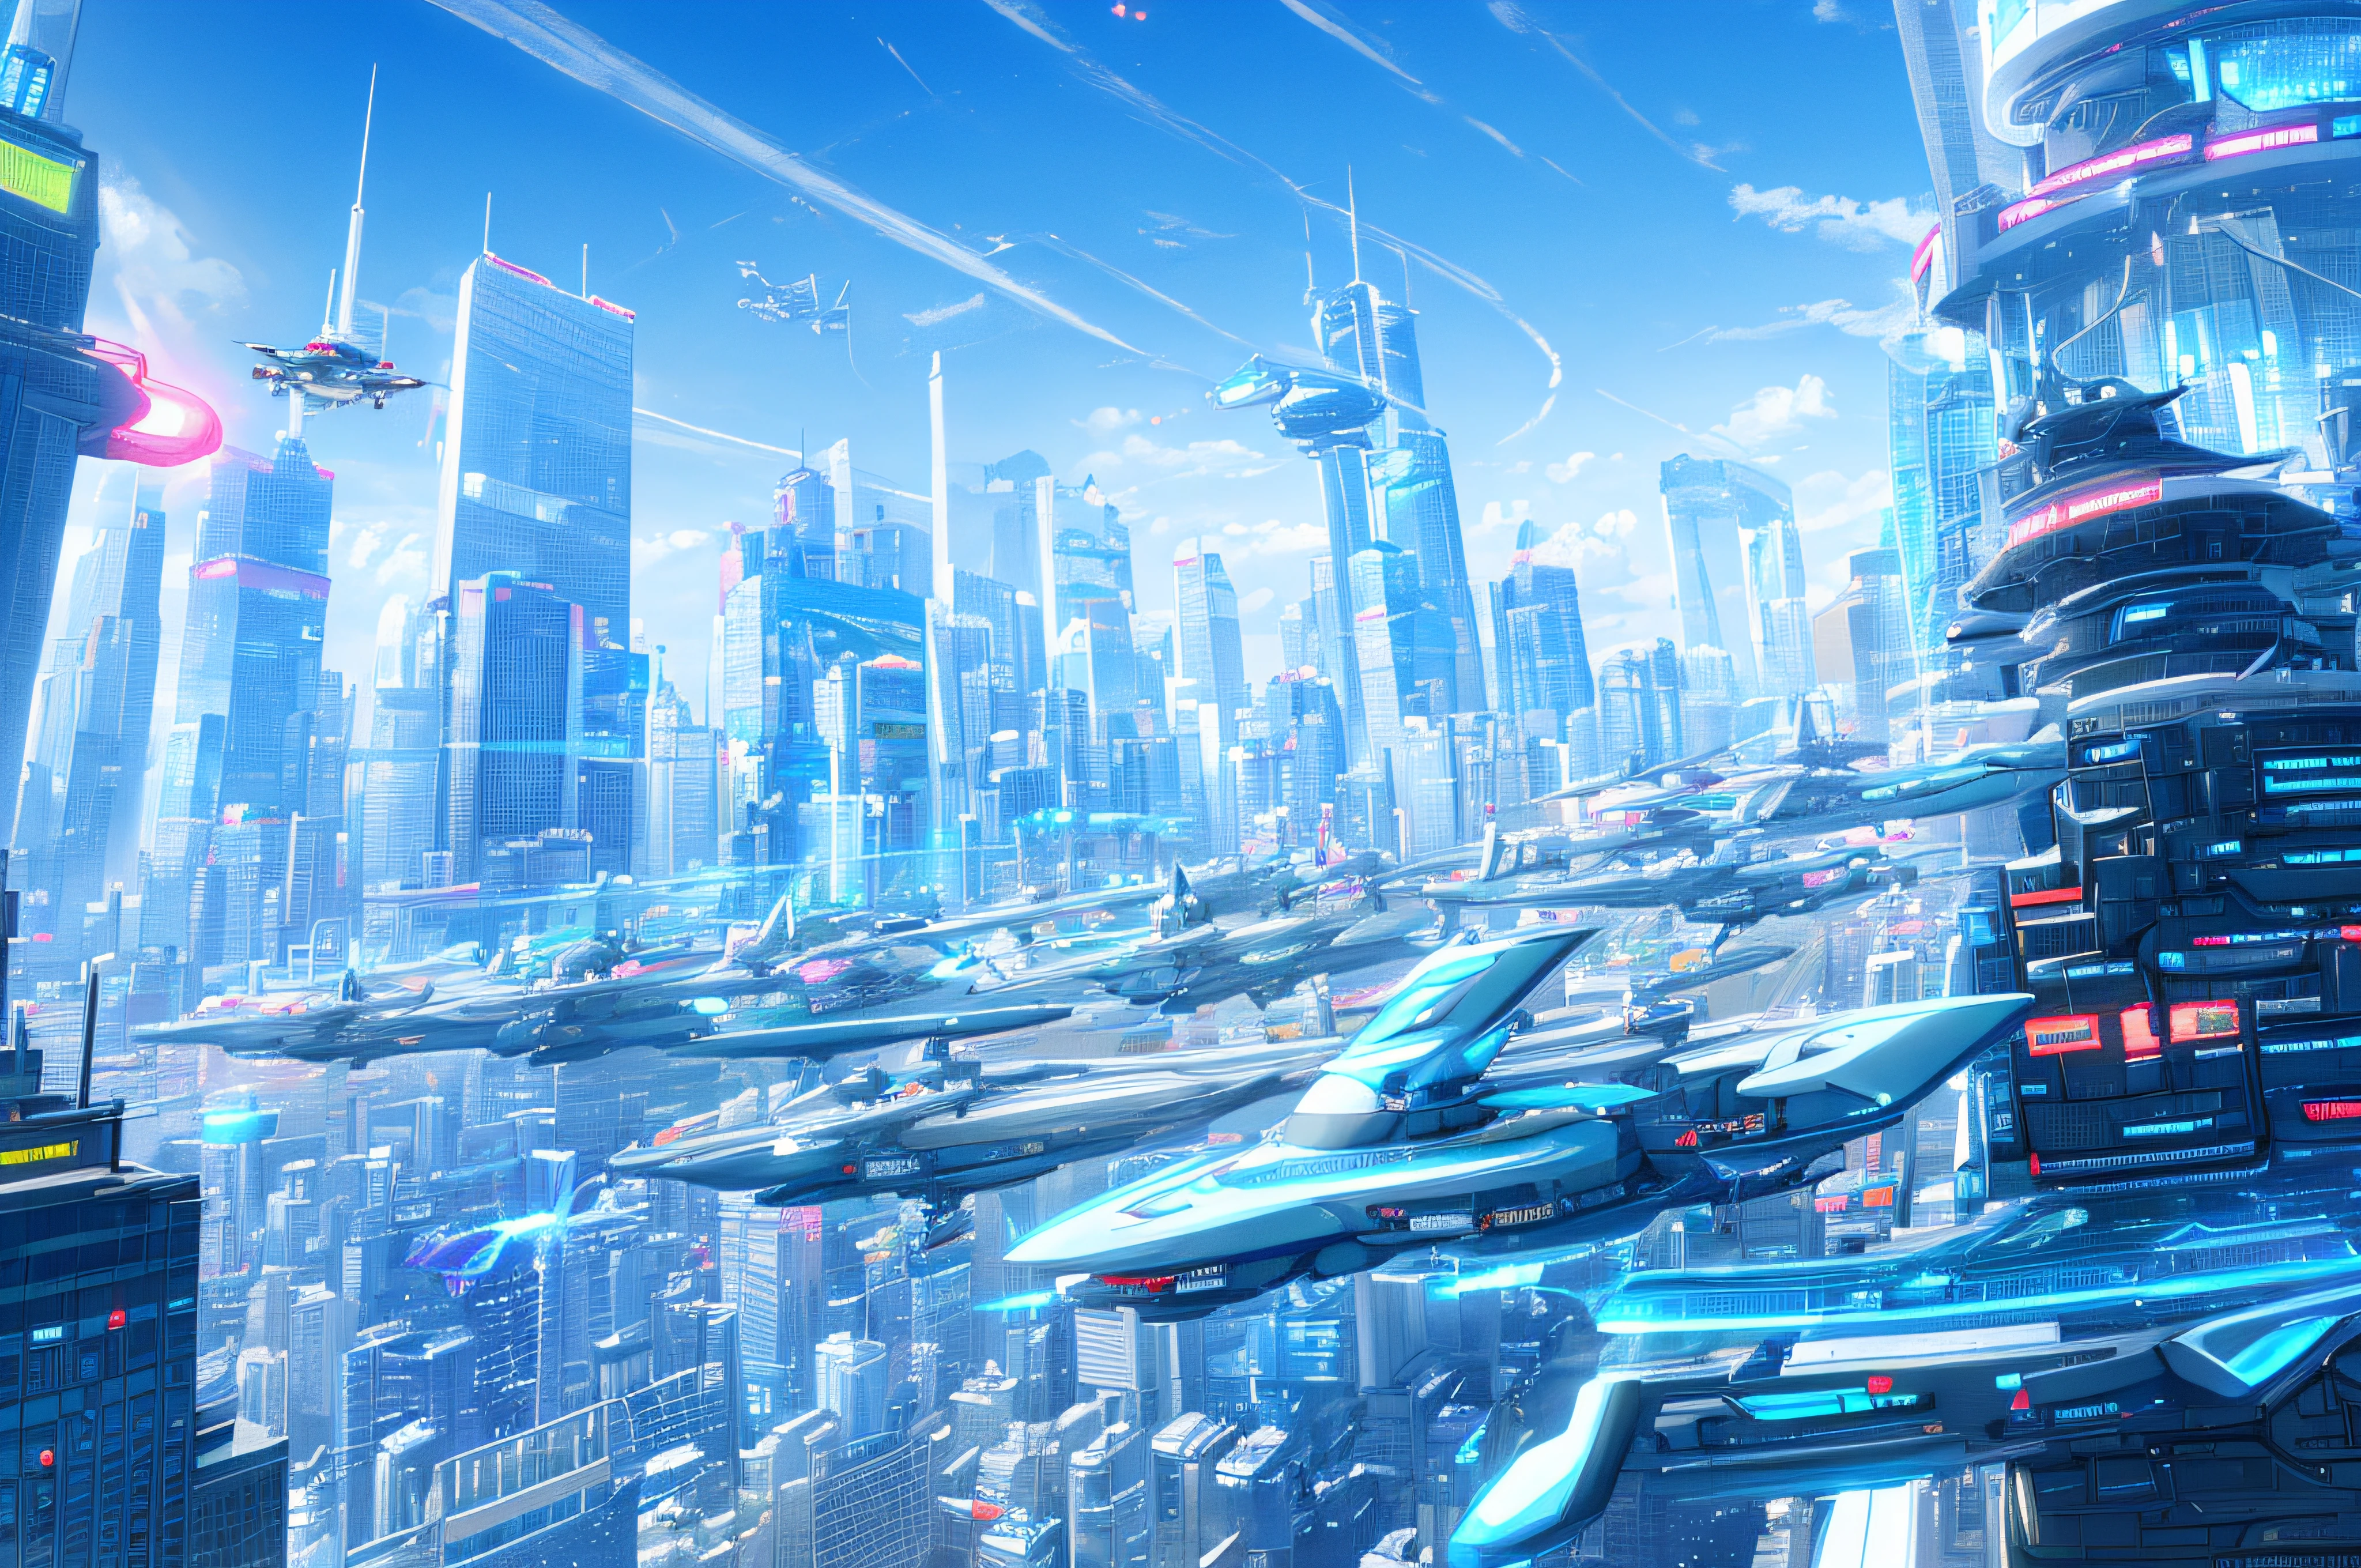 Futuristic cityscape with سيارة طائرةs and colorful skyscrapers、سيارة طائرة、المستقبل القريب、تحوم السيارة في مدينة المستقبل、تحفة、أعلى جودة、تحفة مفصلة للغاية、دقة عالية、8 ك、